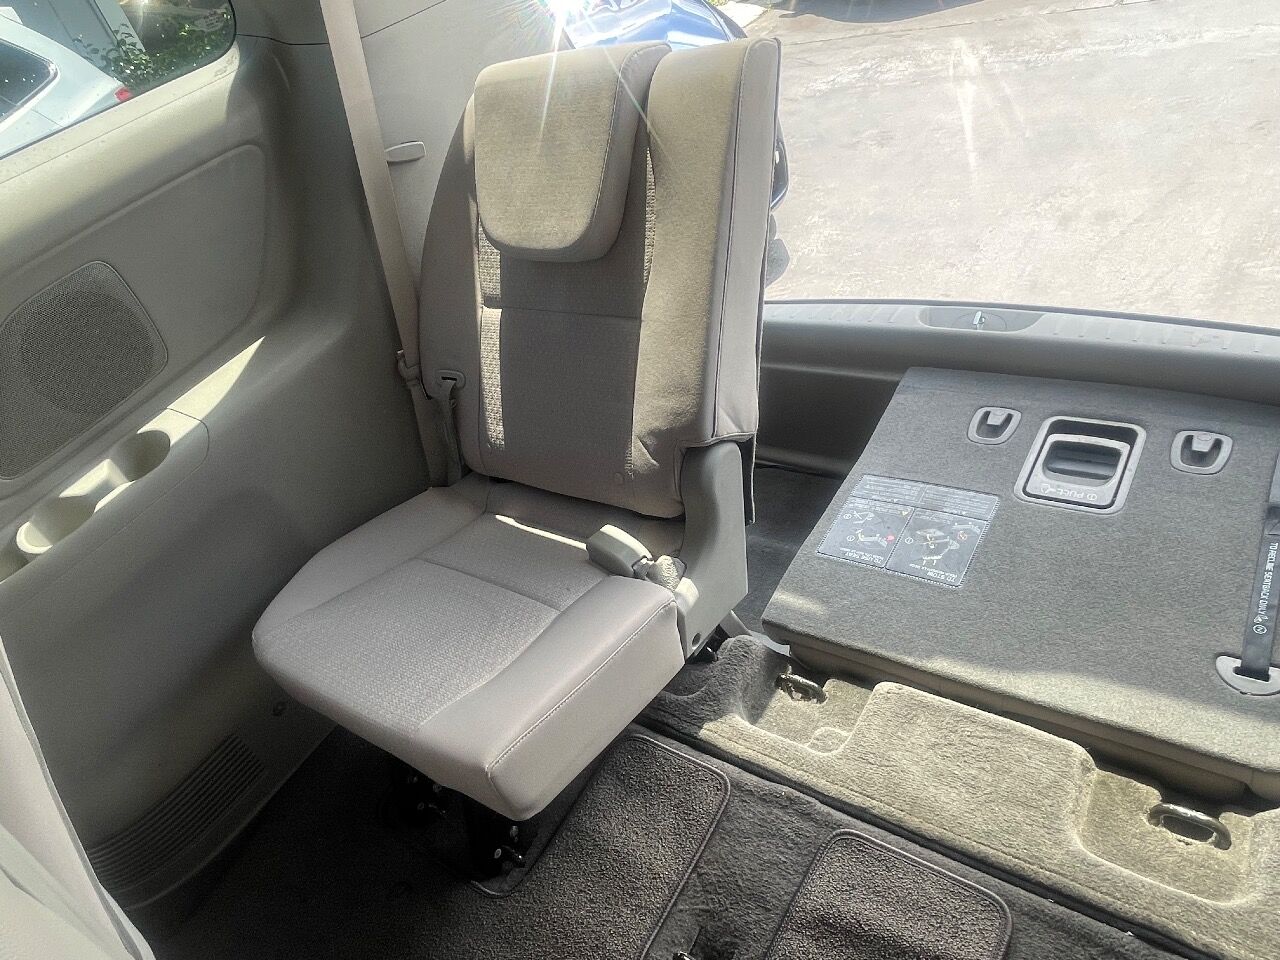 2016 KIA Sedona Minivan - $11,900